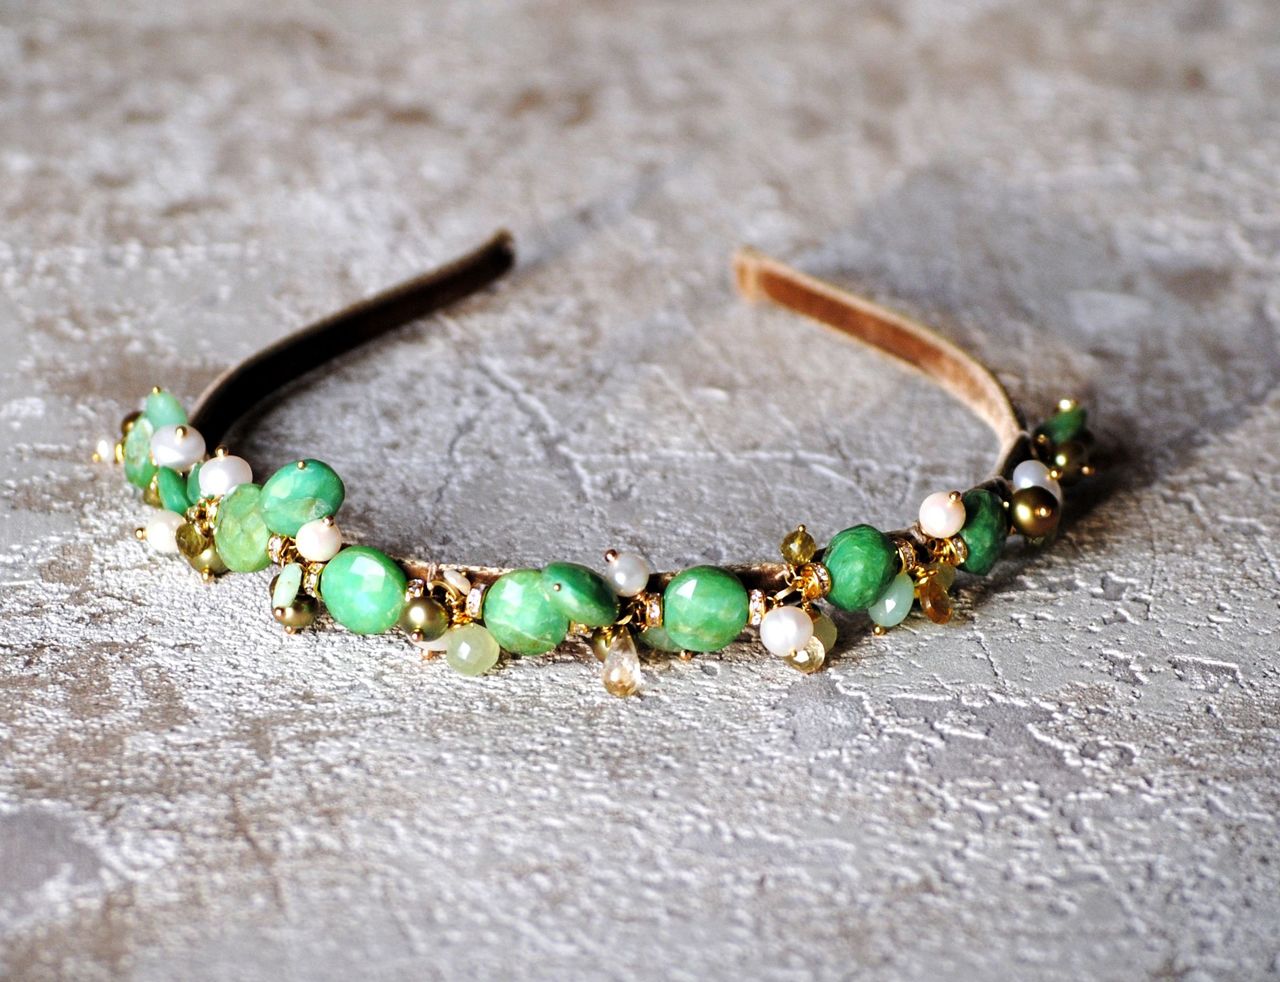 На фото: ювелирные изделия - браслет из камня зеленый опал.